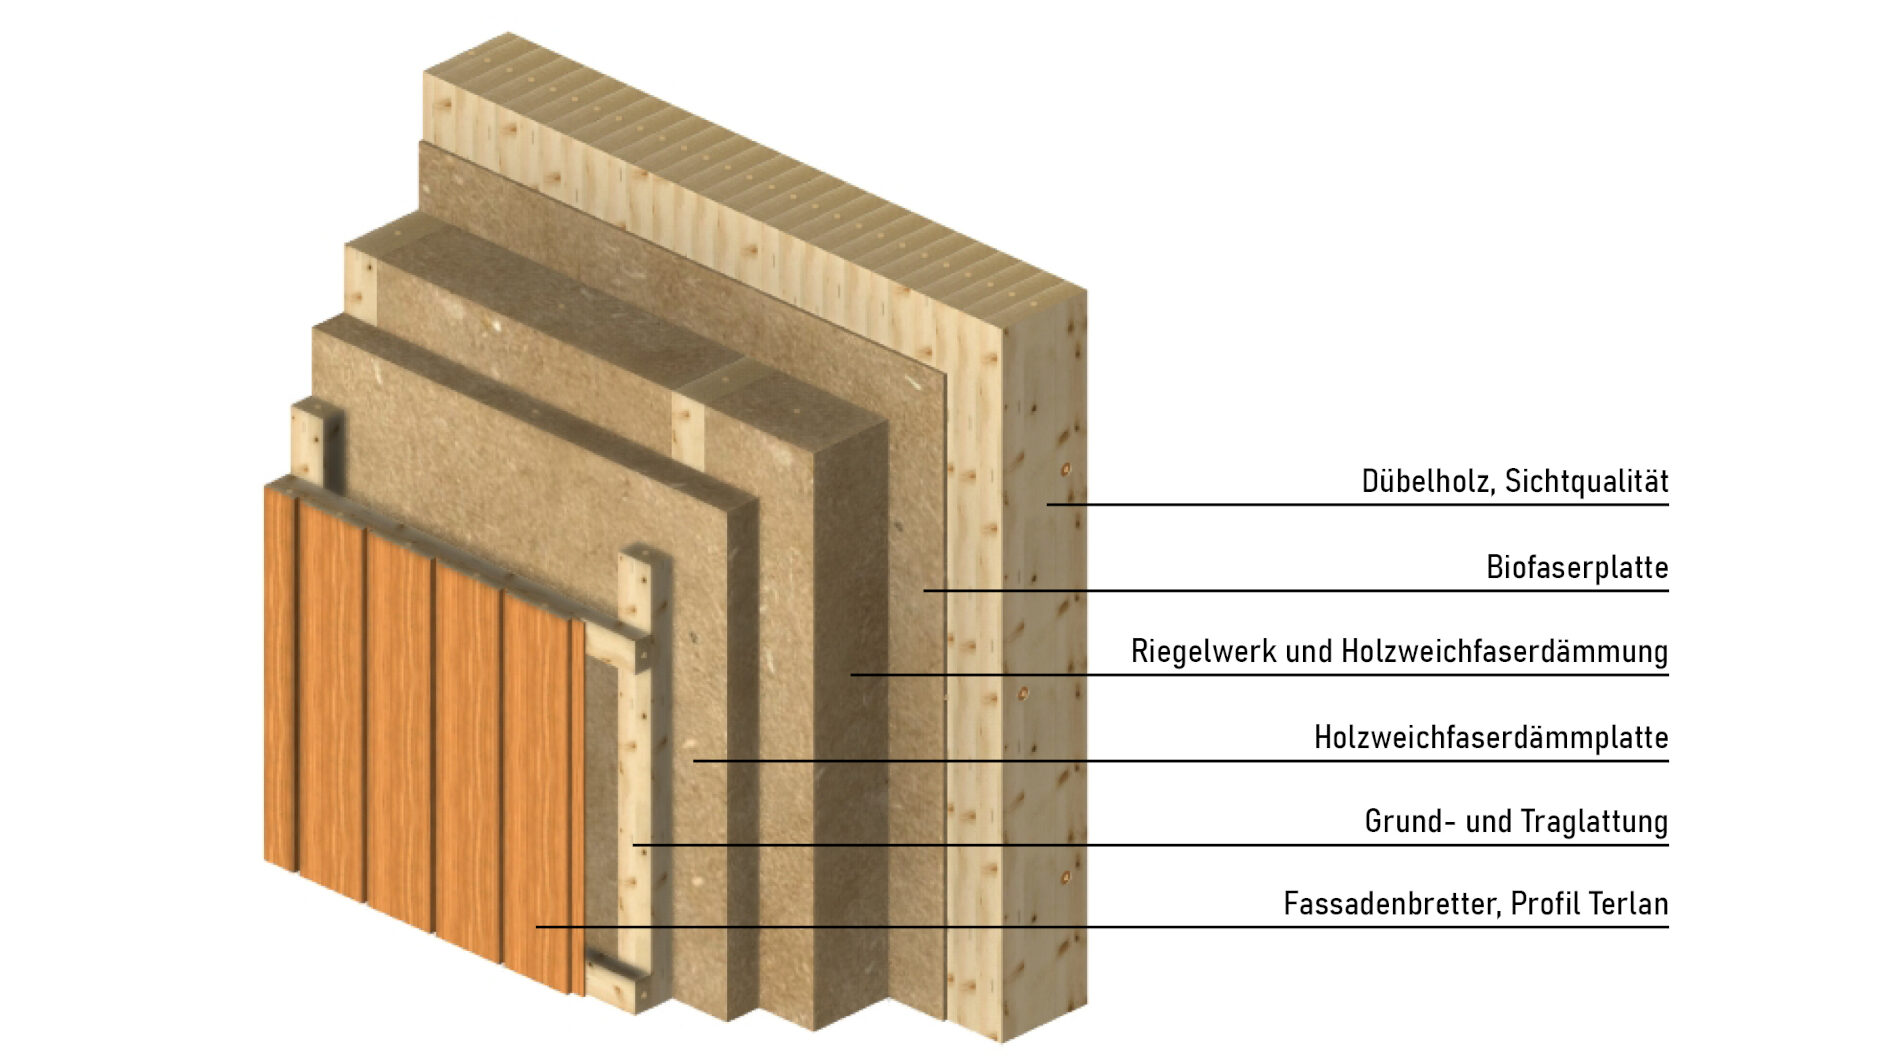 Schema Aufbau Außenwand in Dübelholzbauweise